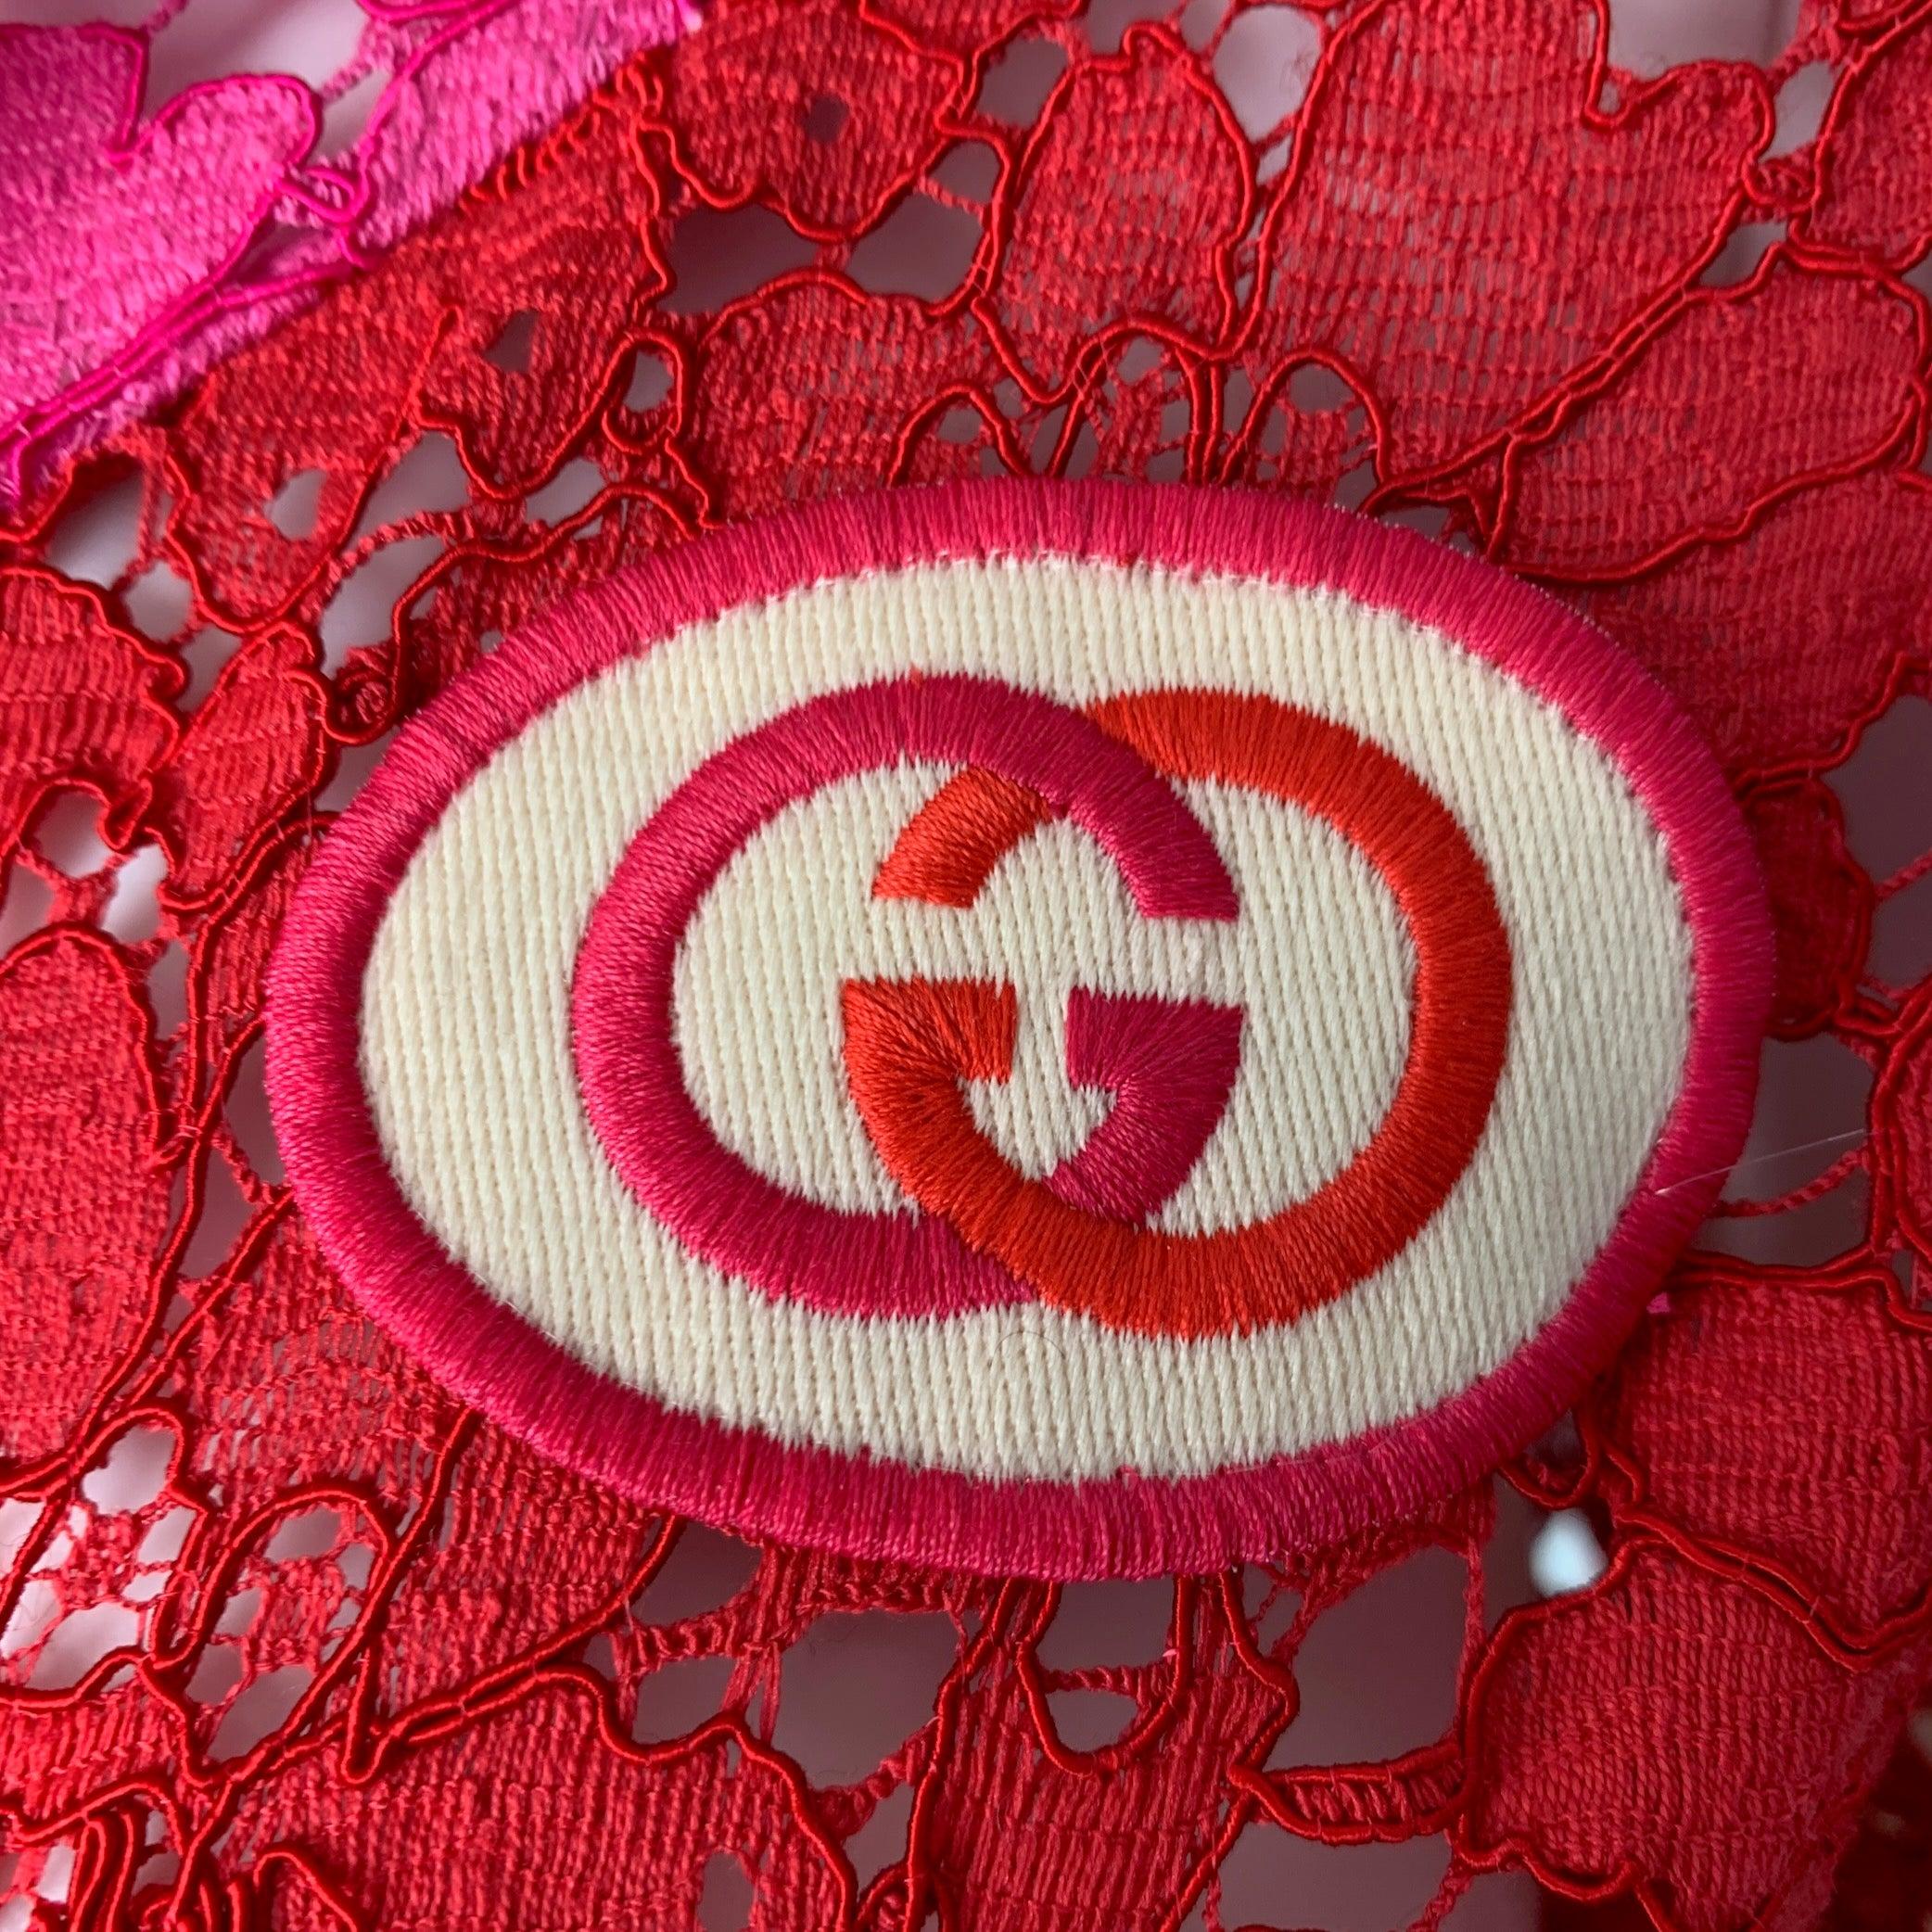 GUCCI 2019 Jacke aus rotem und pinkfarbenem Viskose-Spitzen- und Intarsienmaterial mit geschlitzten Taschen auf der Vorderseite, hohem Kragen und GG-Patch-Applikation. Hergestellt in Italien. Neu mit Tags. 

Markiert:   XXS 

Abmessungen: 
